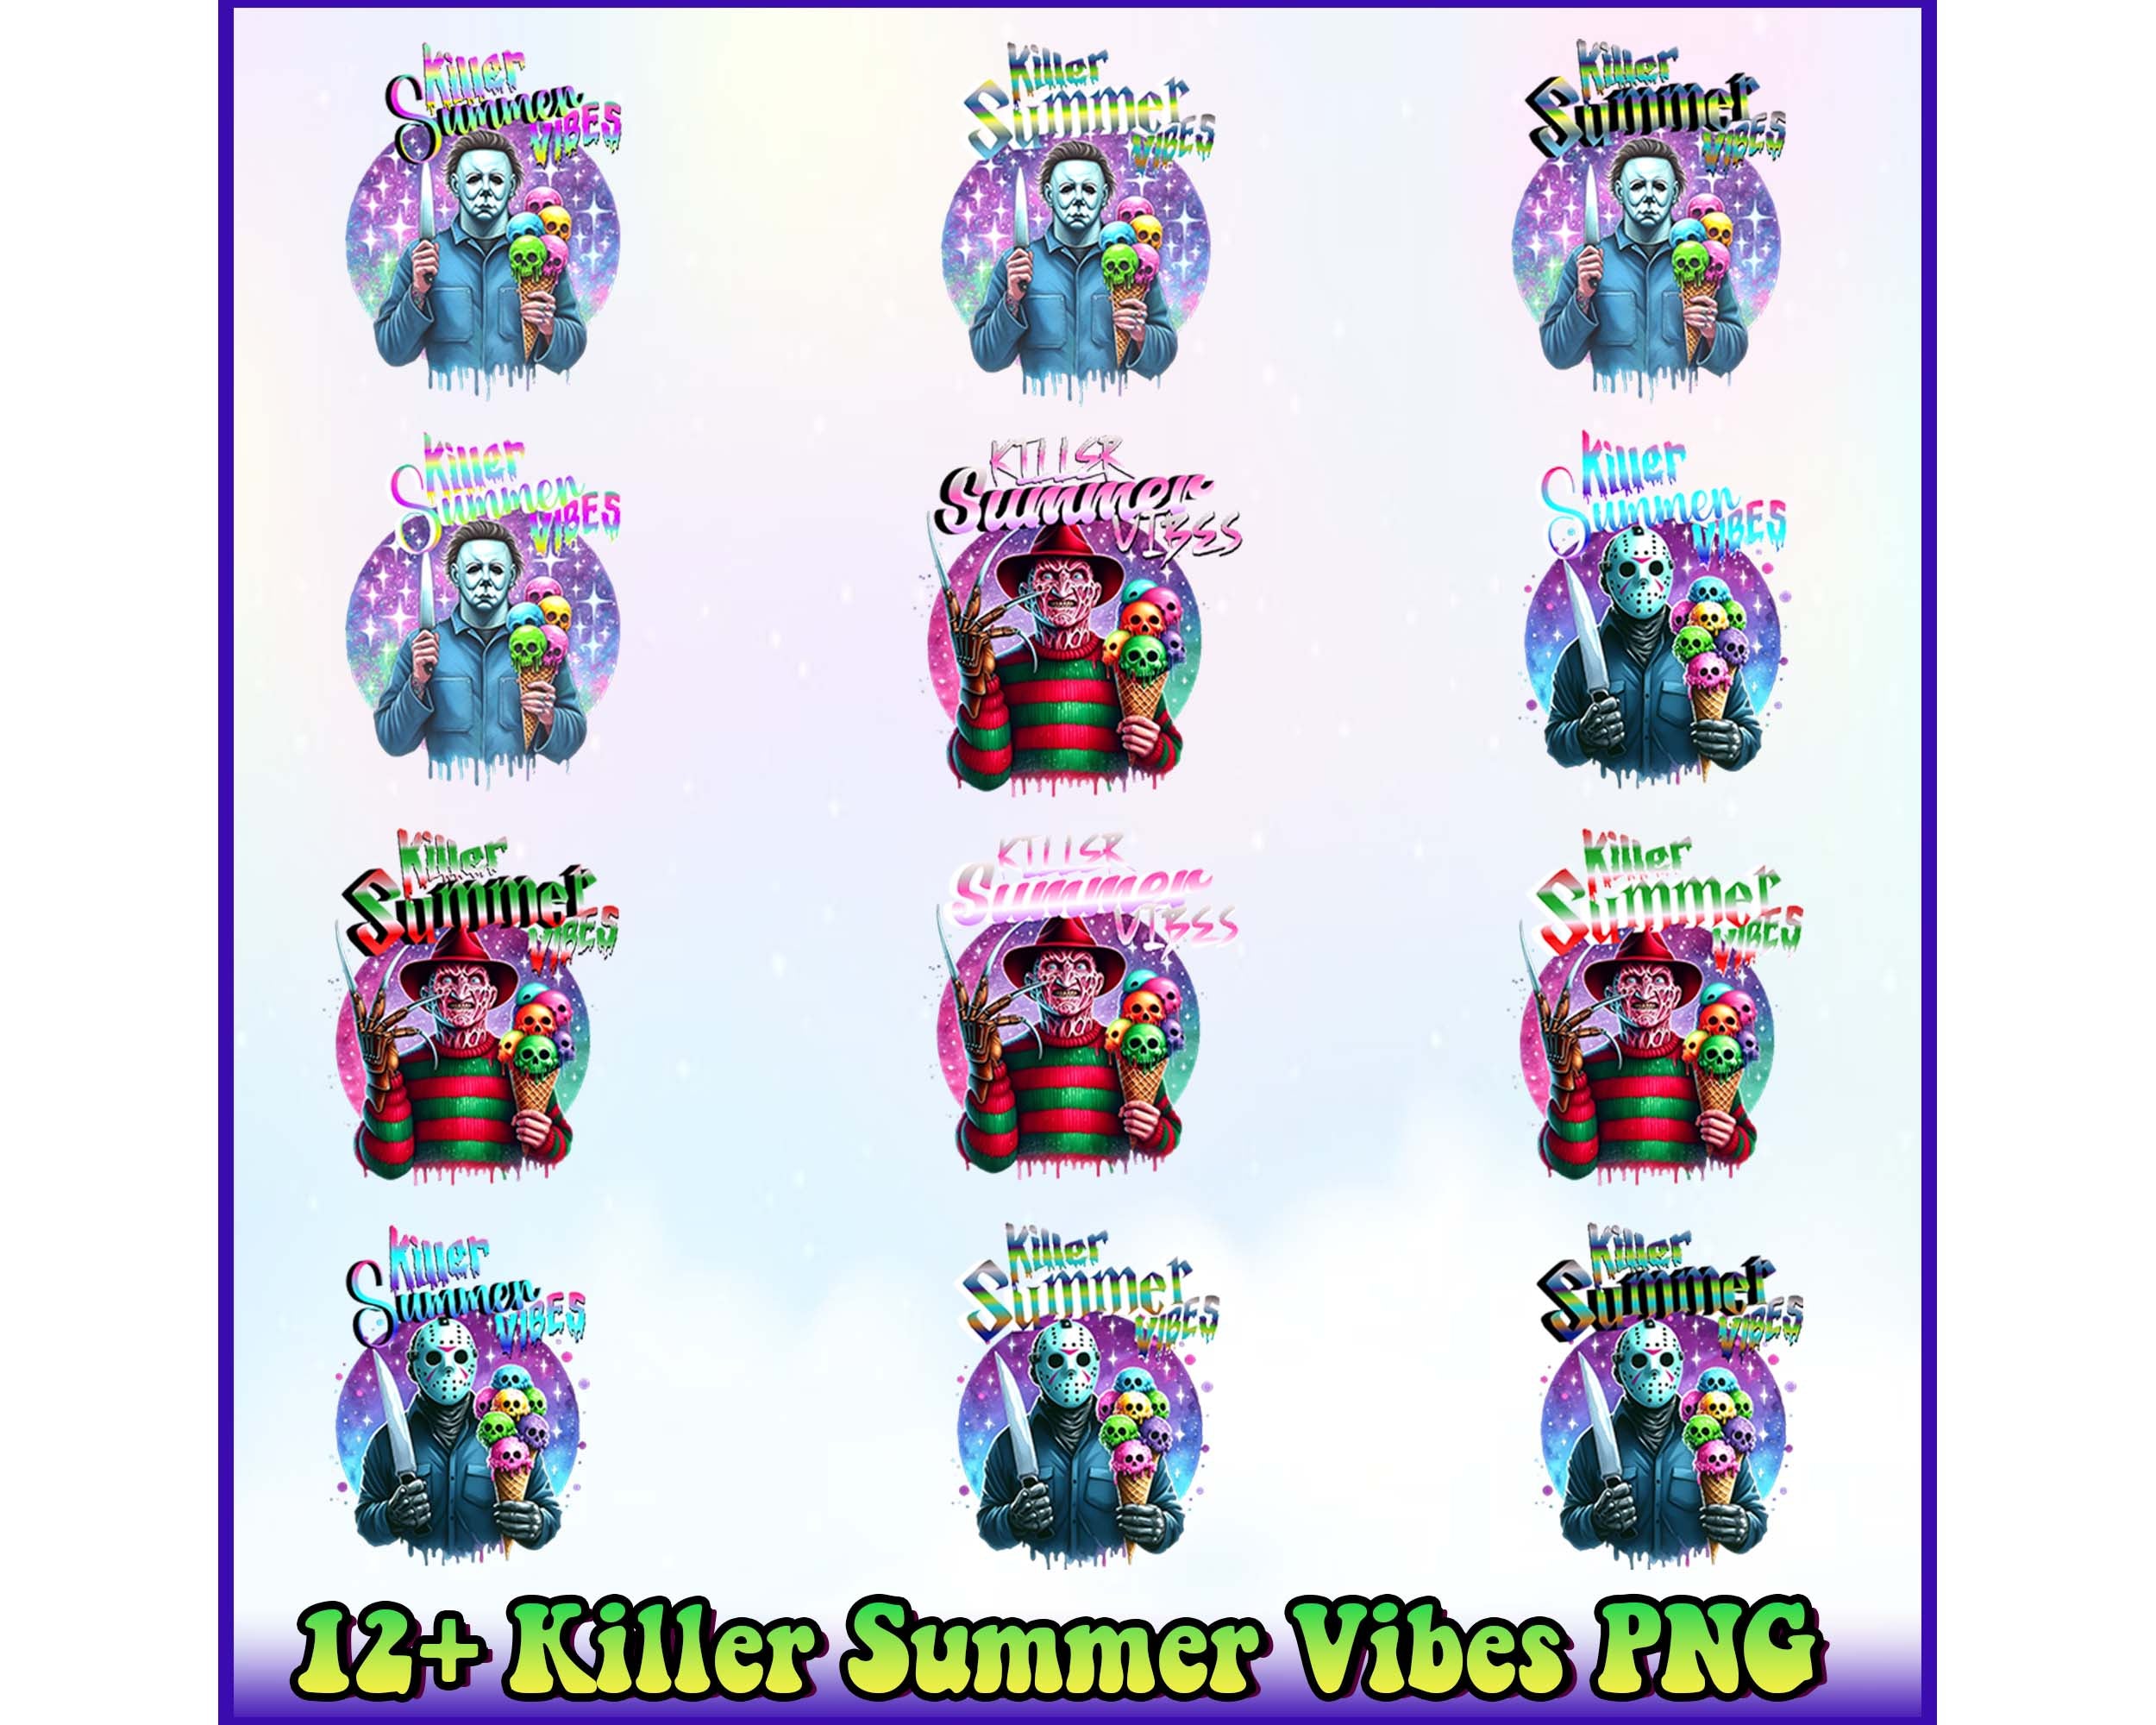 12+ Killer Summer Vibes Png Bundle Instant Download